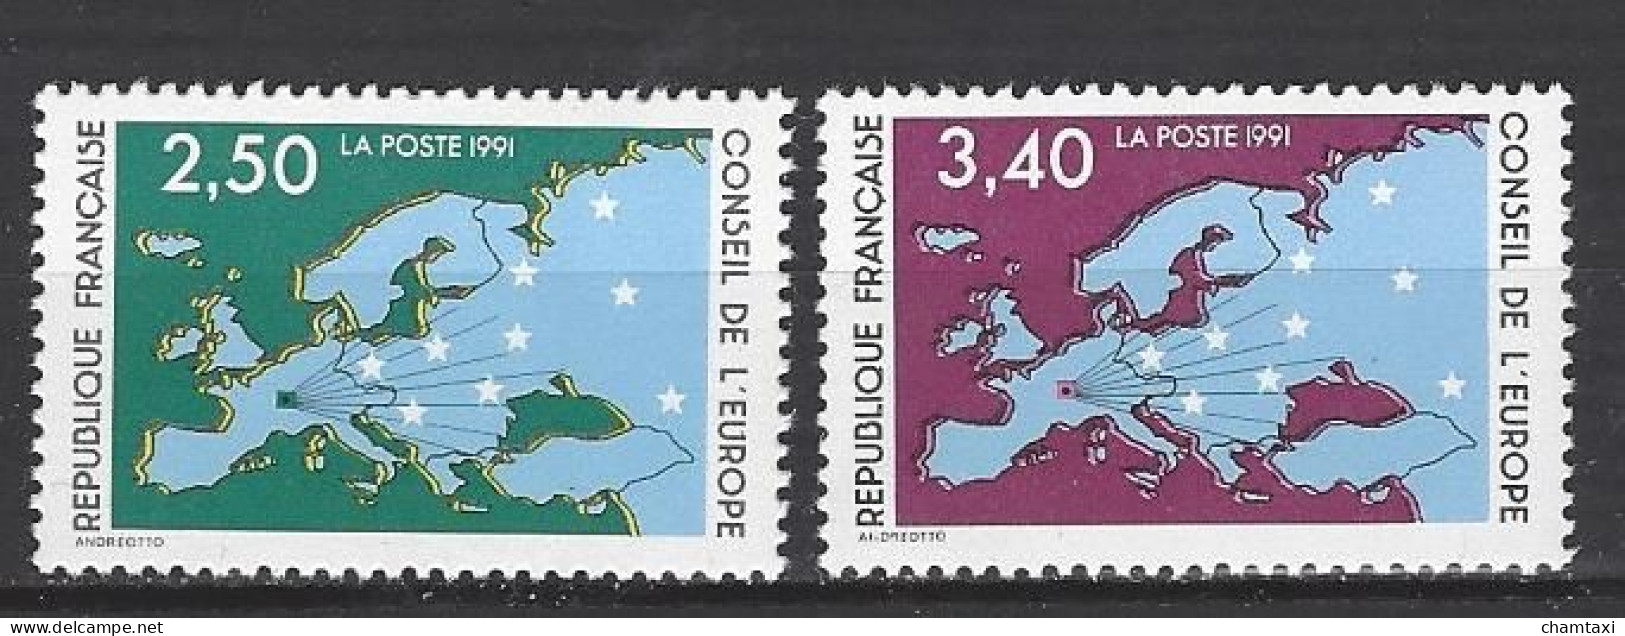 CONSEIL DE L EUROPE 1991 TIMBRE SERVICE 106 107 CARTE D EUROPE ET ETOILES - Mint/Hinged